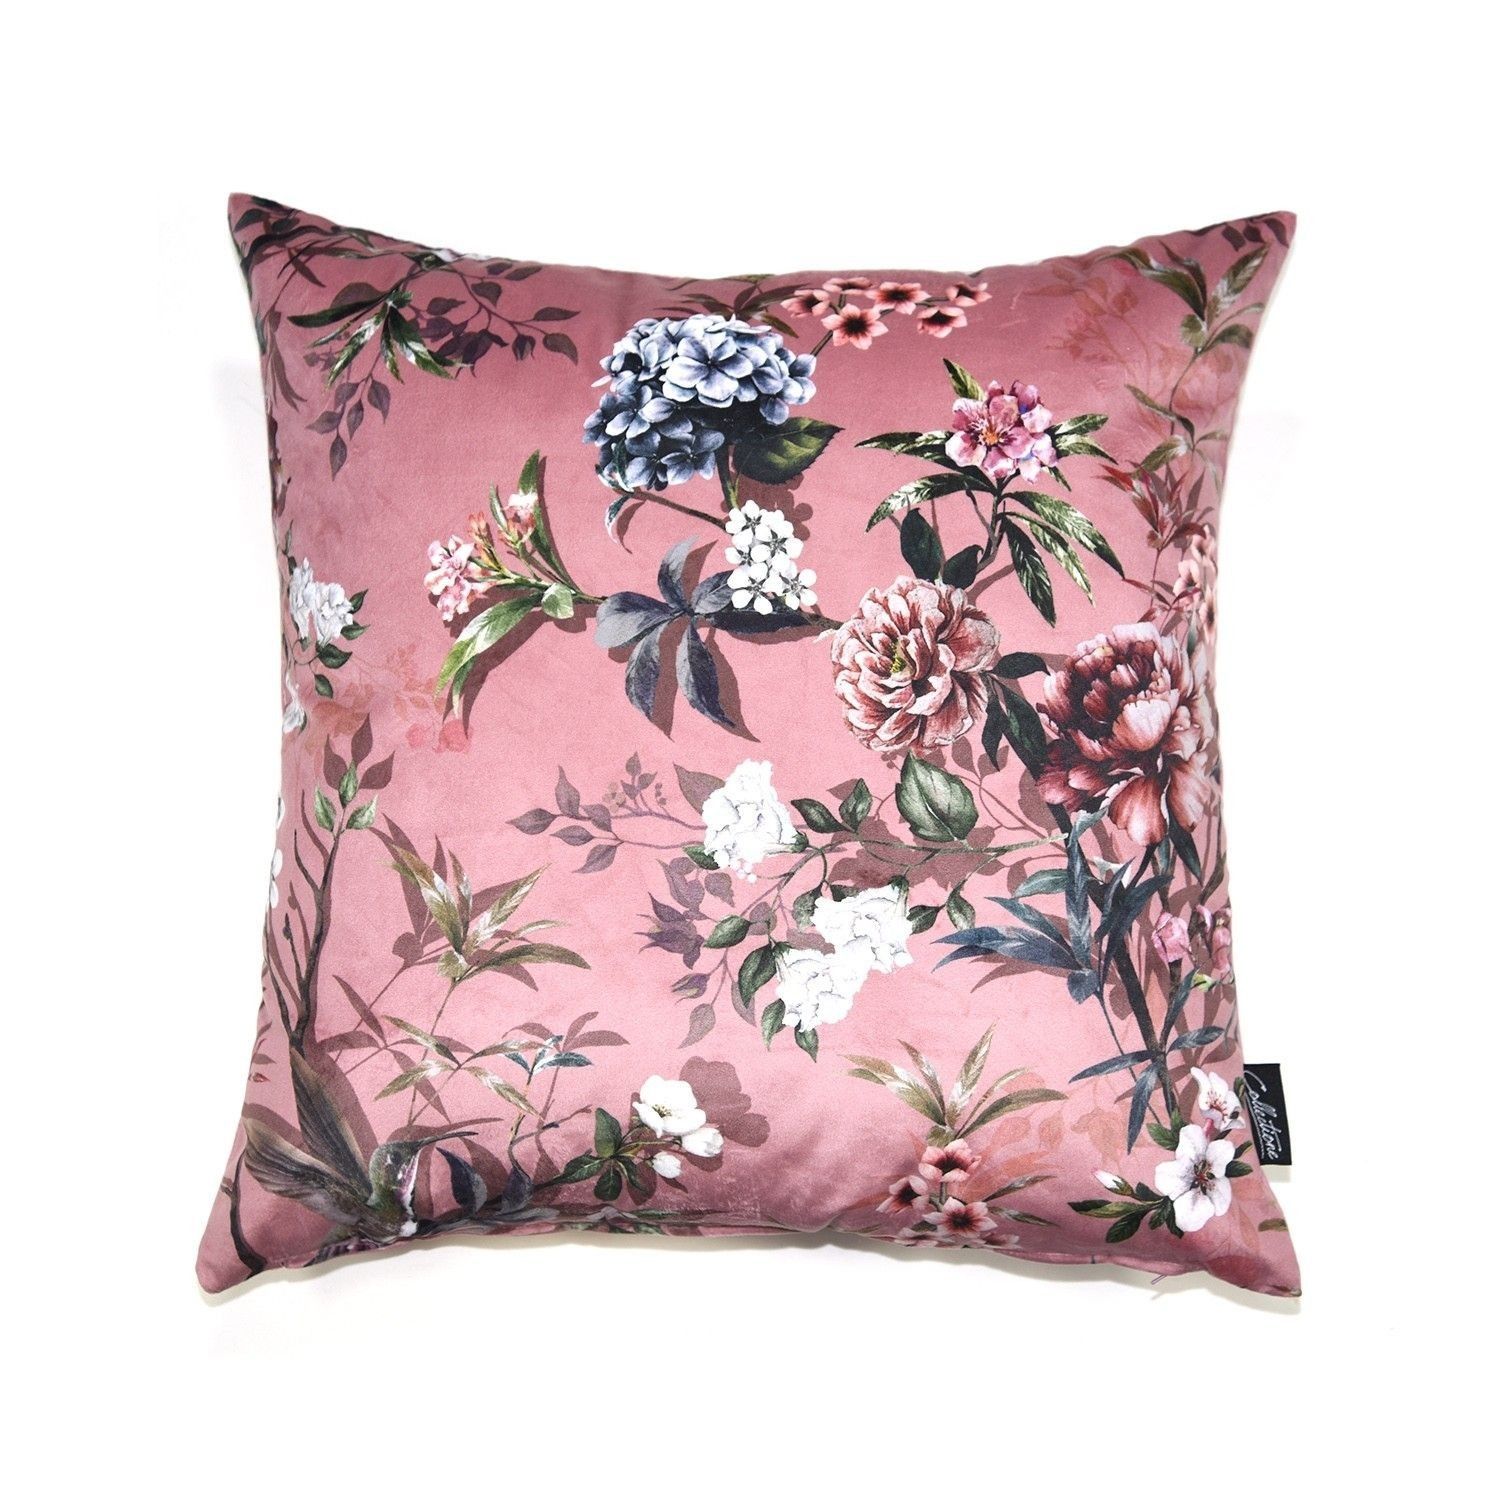 Růžový sametový polštář s květy Luisa roze- 45*45cm Collectione - LaHome - vintage dekorace